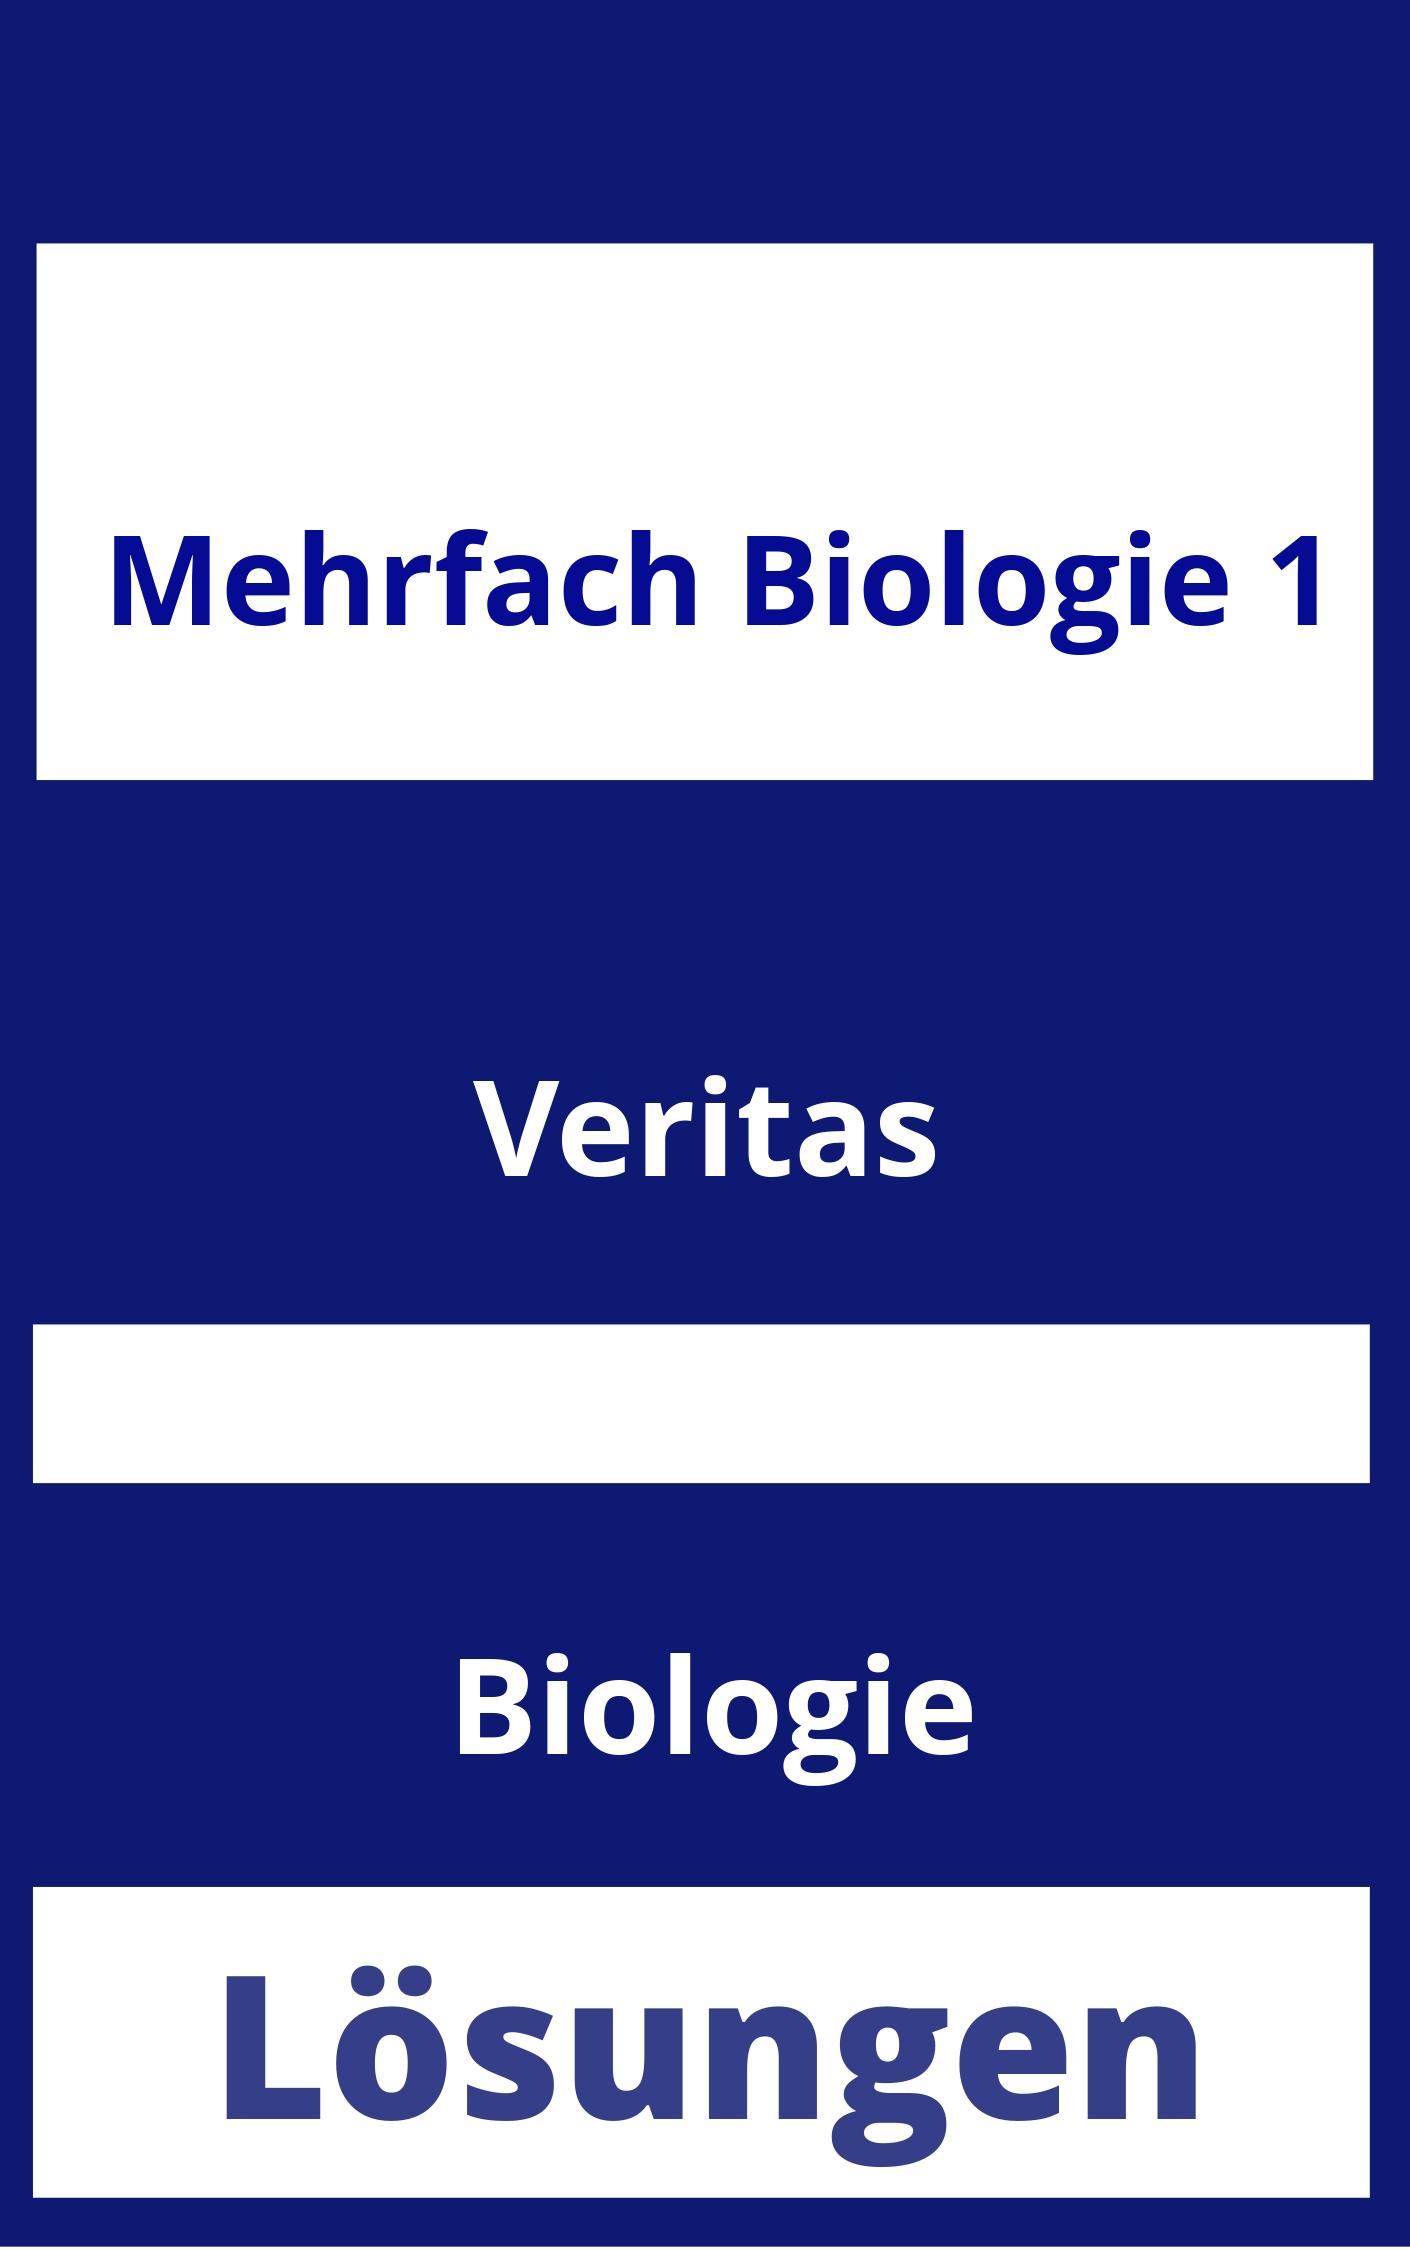 MEHRfach Biologie 1 Lösungen PDF